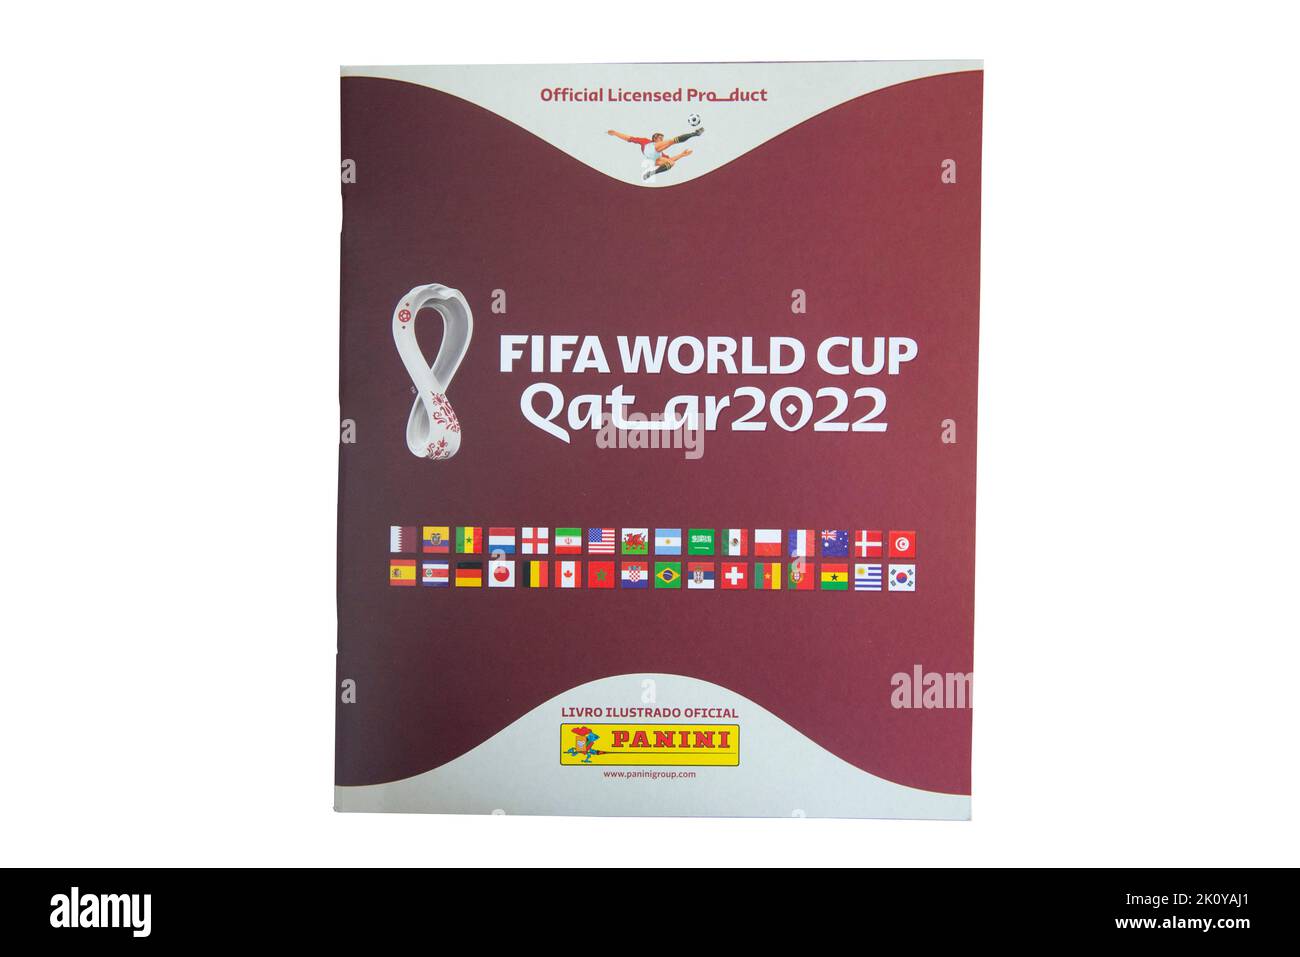 Bauru, Brasilien - 09.12.22: Draufsicht auf Panini Album FIFA World Cup 2022 - Katar auf dem Schreibtisch. Sammleraufkleber von Spielern der WM-Teams - Stockfoto